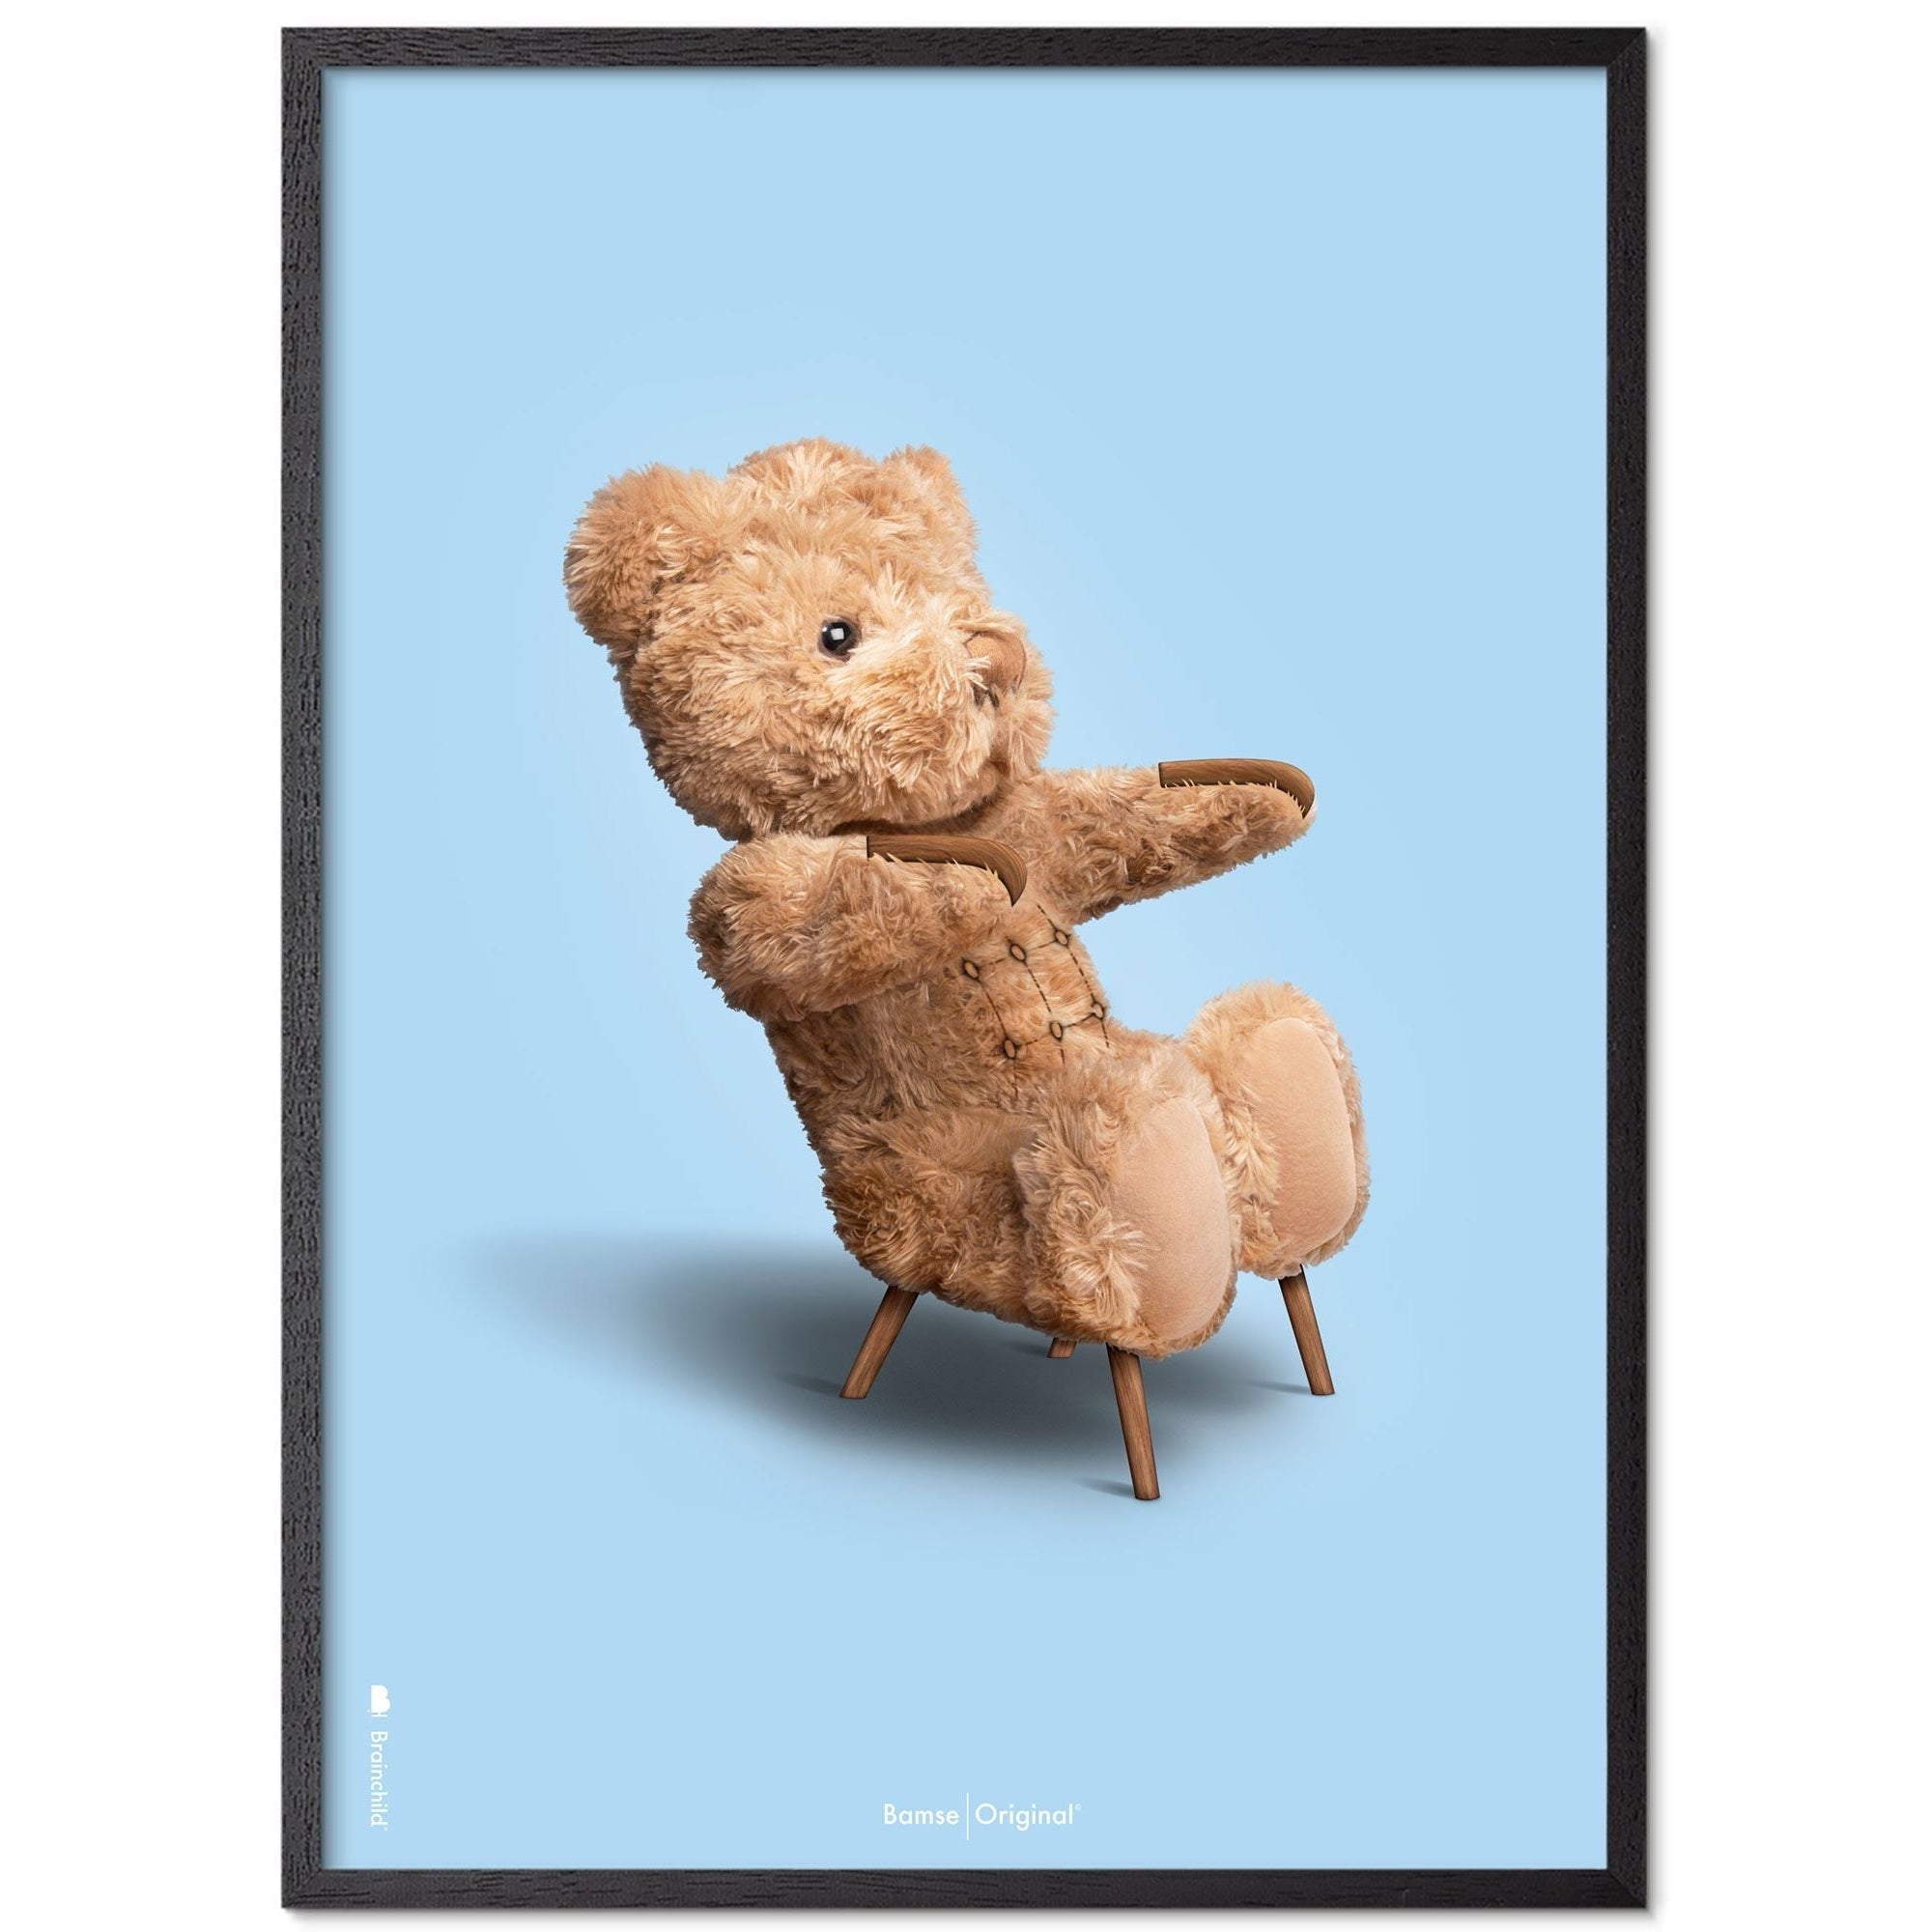 Brainchild Teddy Bear Classic Poster Frame laget av svart lakkert tre 30x40 cm, lyseblå bakgrunn